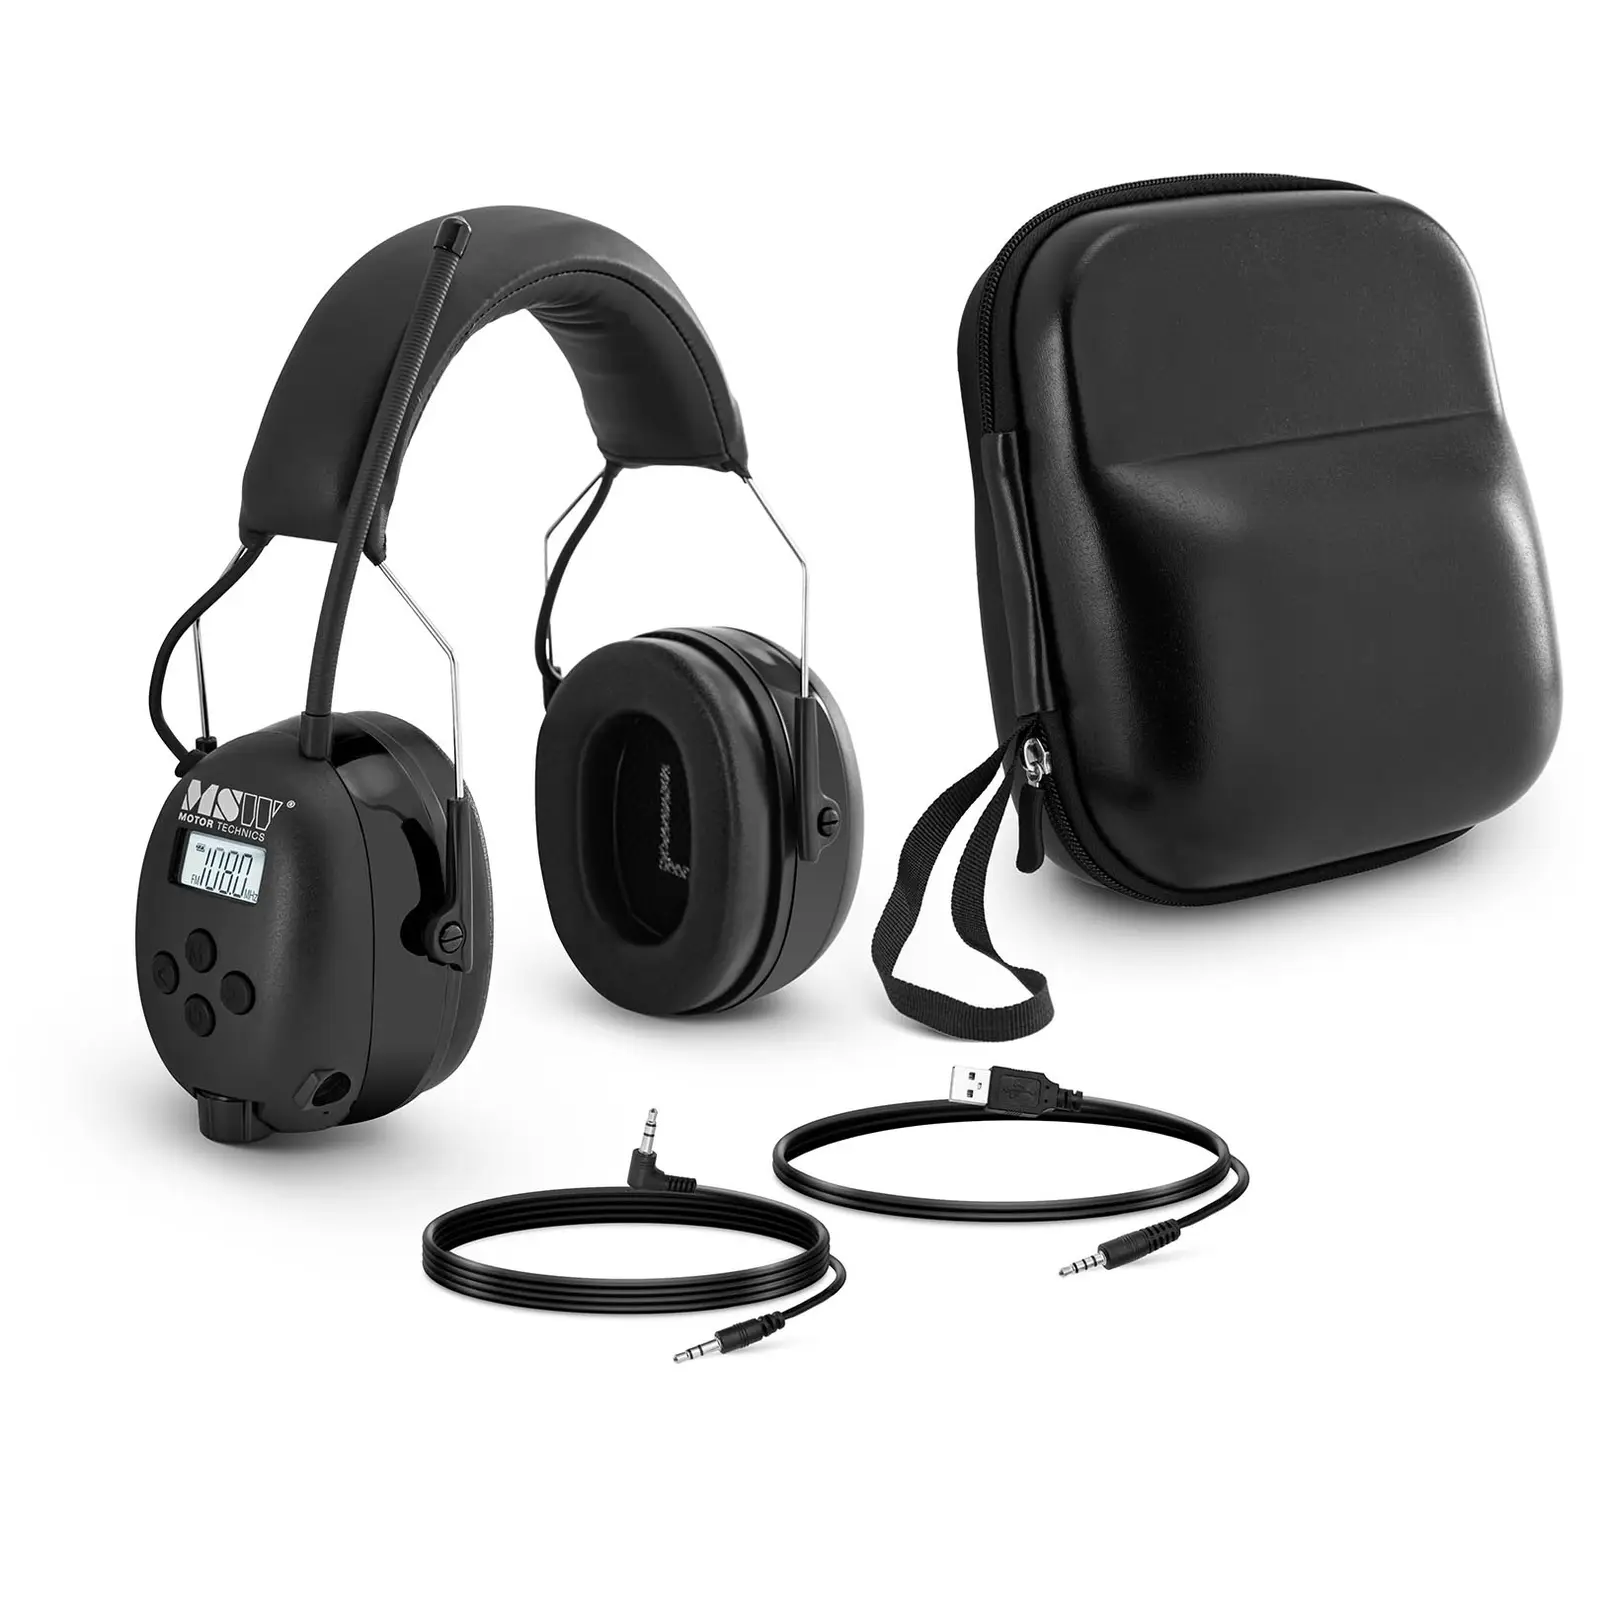 Protección auditiva con Bluetooth - micrófono - pantalla LCD - batería - negro